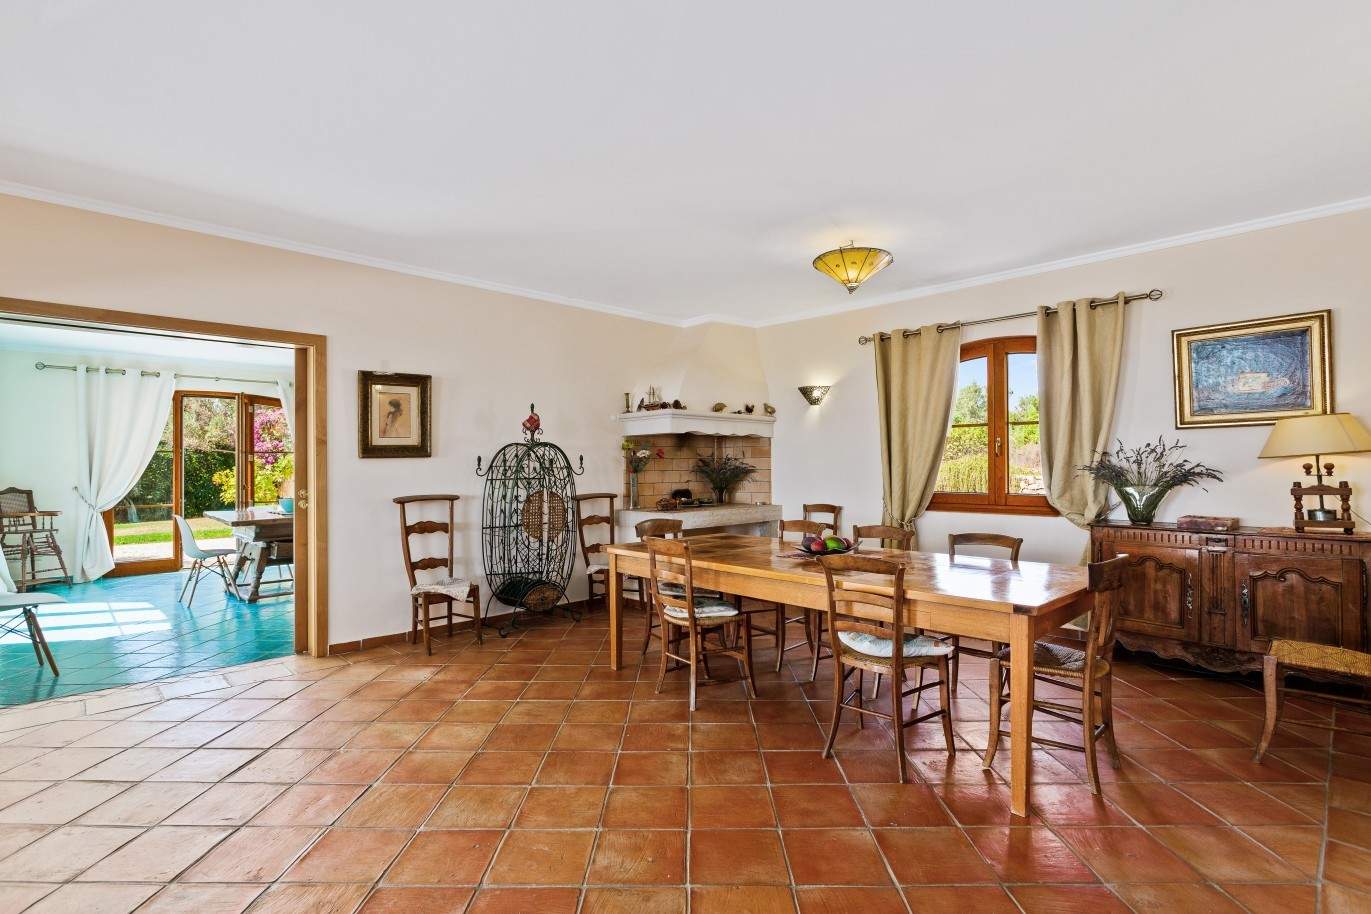 Villa à vendre avec vue sur la mer à Silves, Algarve, Portugal_97120